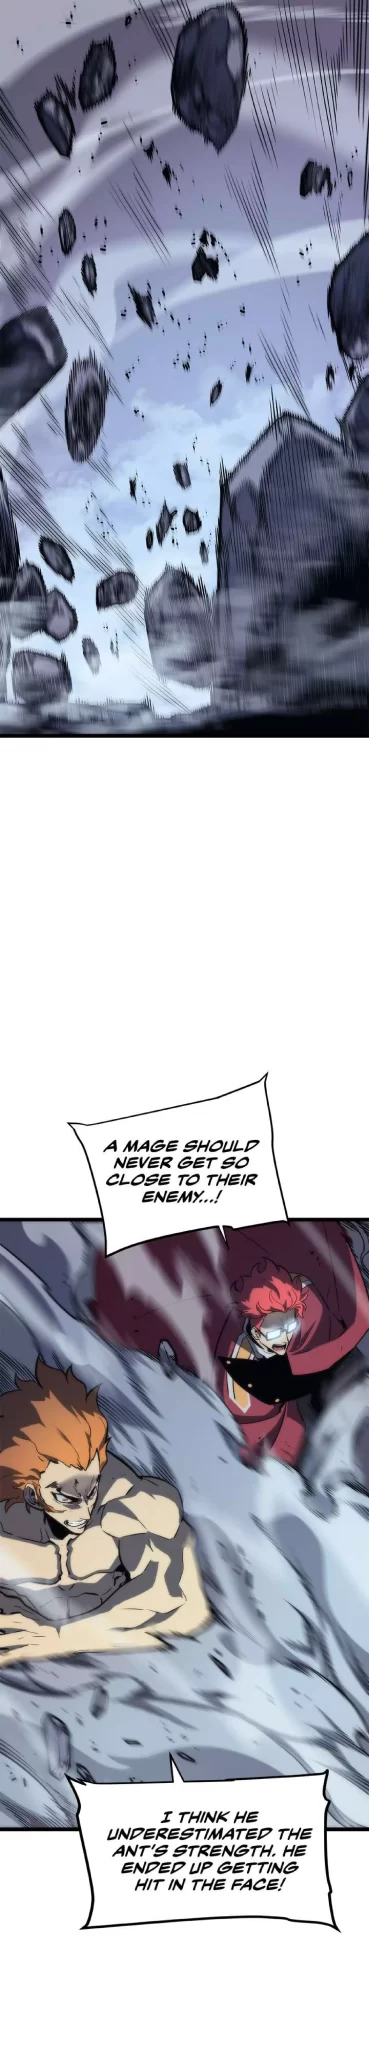 Solo Leveling Manga Manga Chapter - 102 - image 18